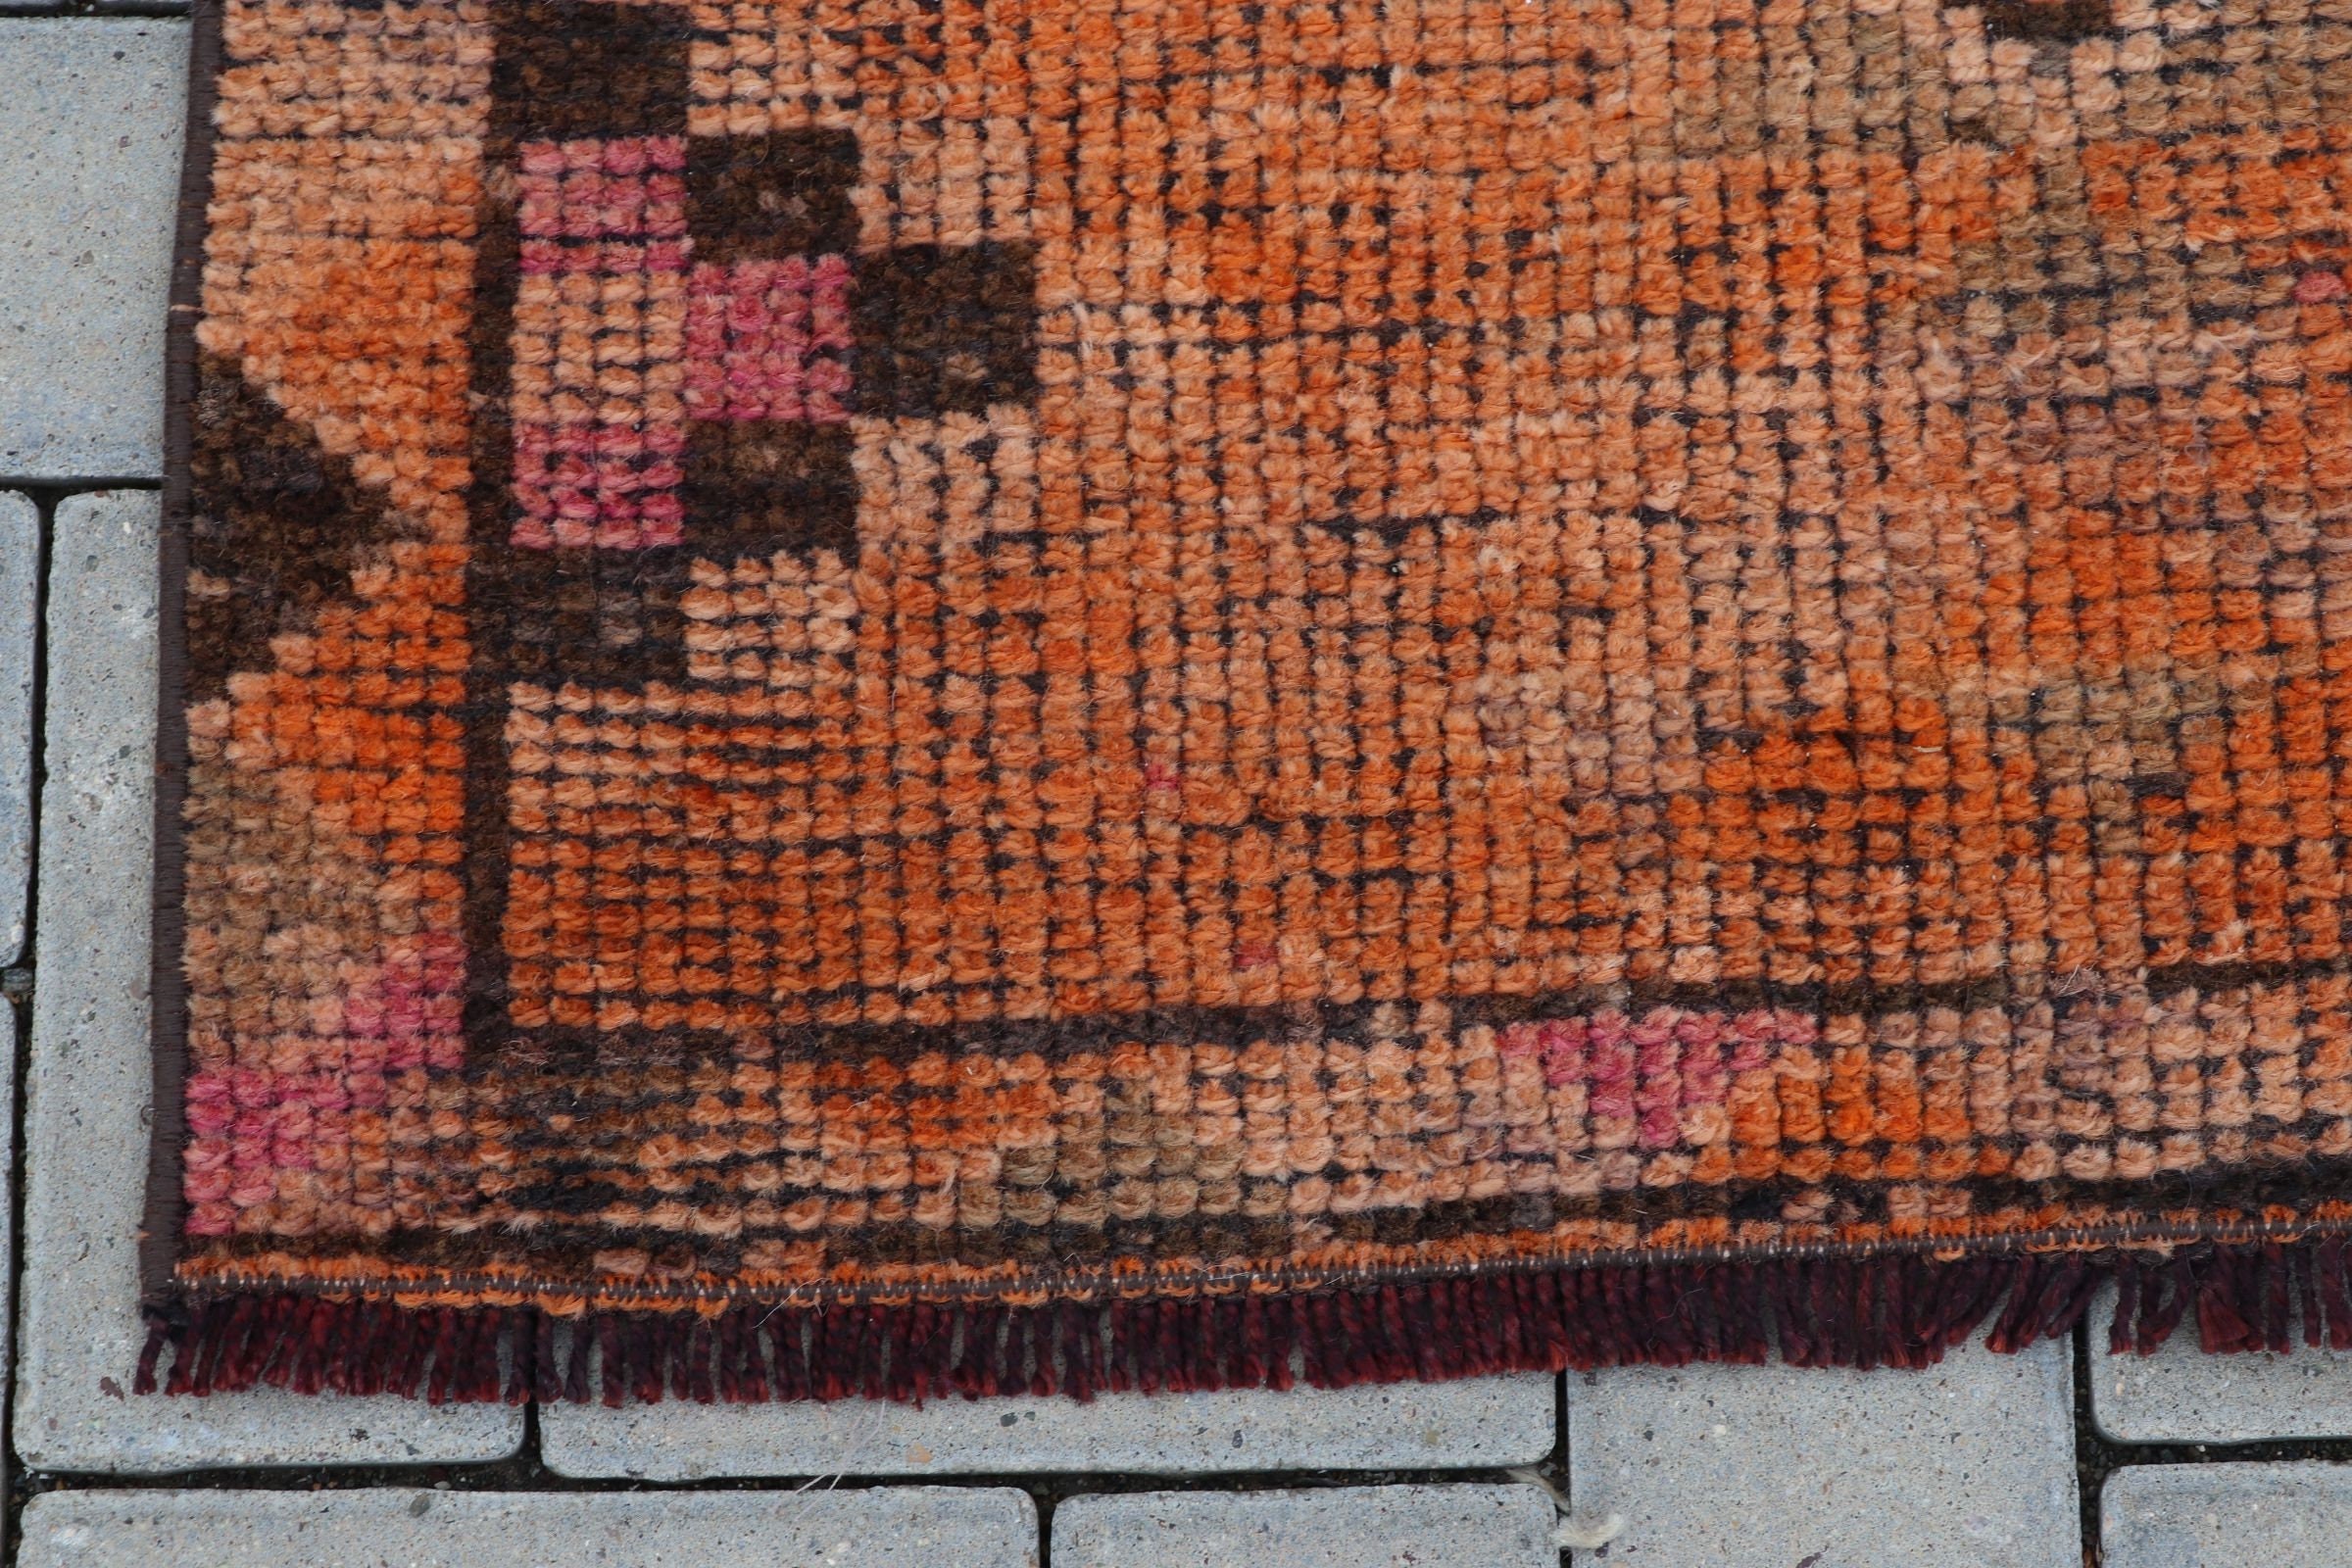 Orange Antique Rug, Handmade Rugs, Rugs for Corridor, Vintage Rug, Wool Rug, Floor Rug, Hallway Rugs, 2.7x11.3 ft Runner Rug, Turkish Rug